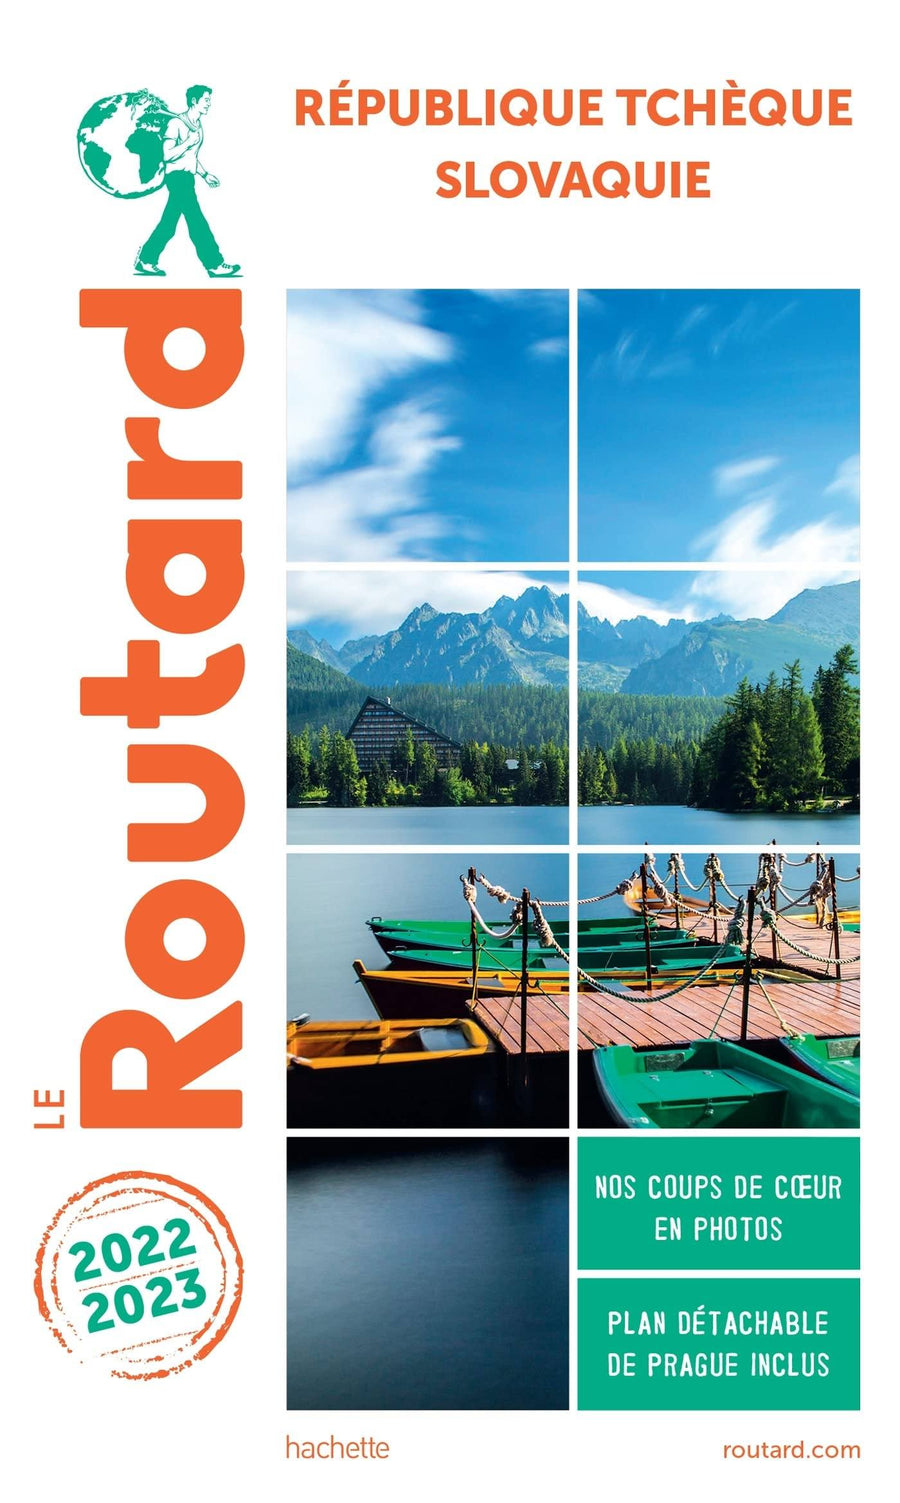 Guide du Routard - République Tchèque & Slovaquie 2022/23 | Hachette guide de voyage Hachette 